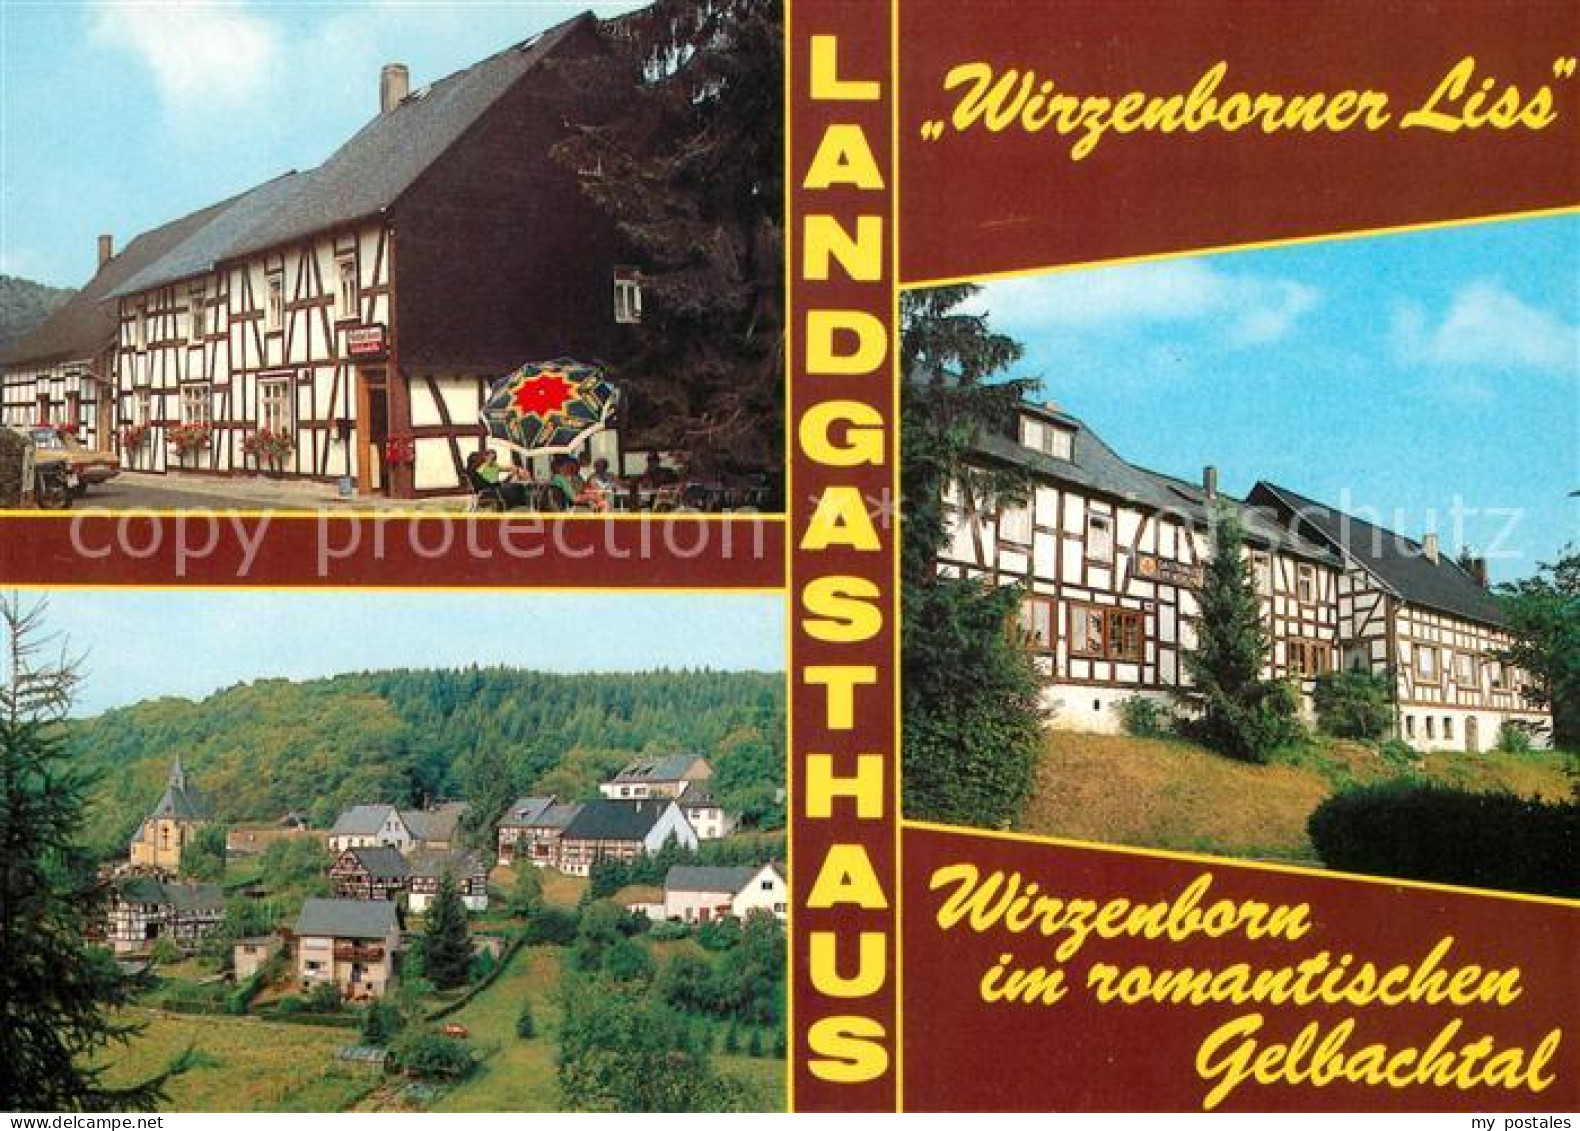 73155820 Wirzenborn Landgasthaus Wirzenborner Liss Gelbachtal Fachwerkhaeuser Wi - Montabaur